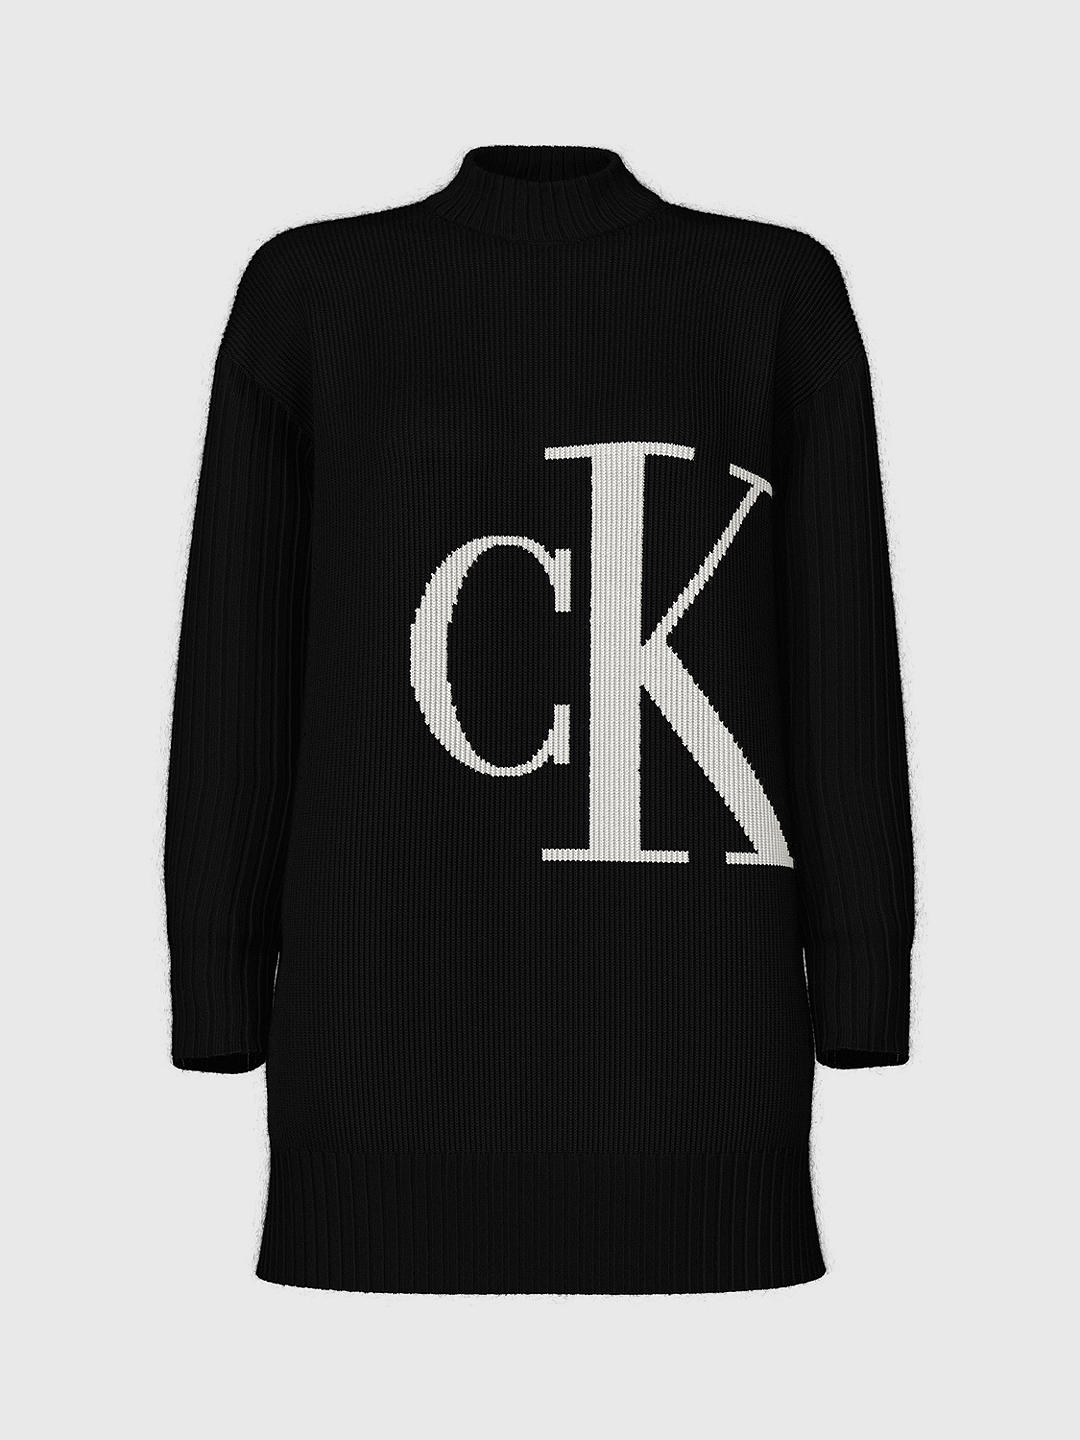 Calvin Klein Blown Up Logo Jumper, Black/White